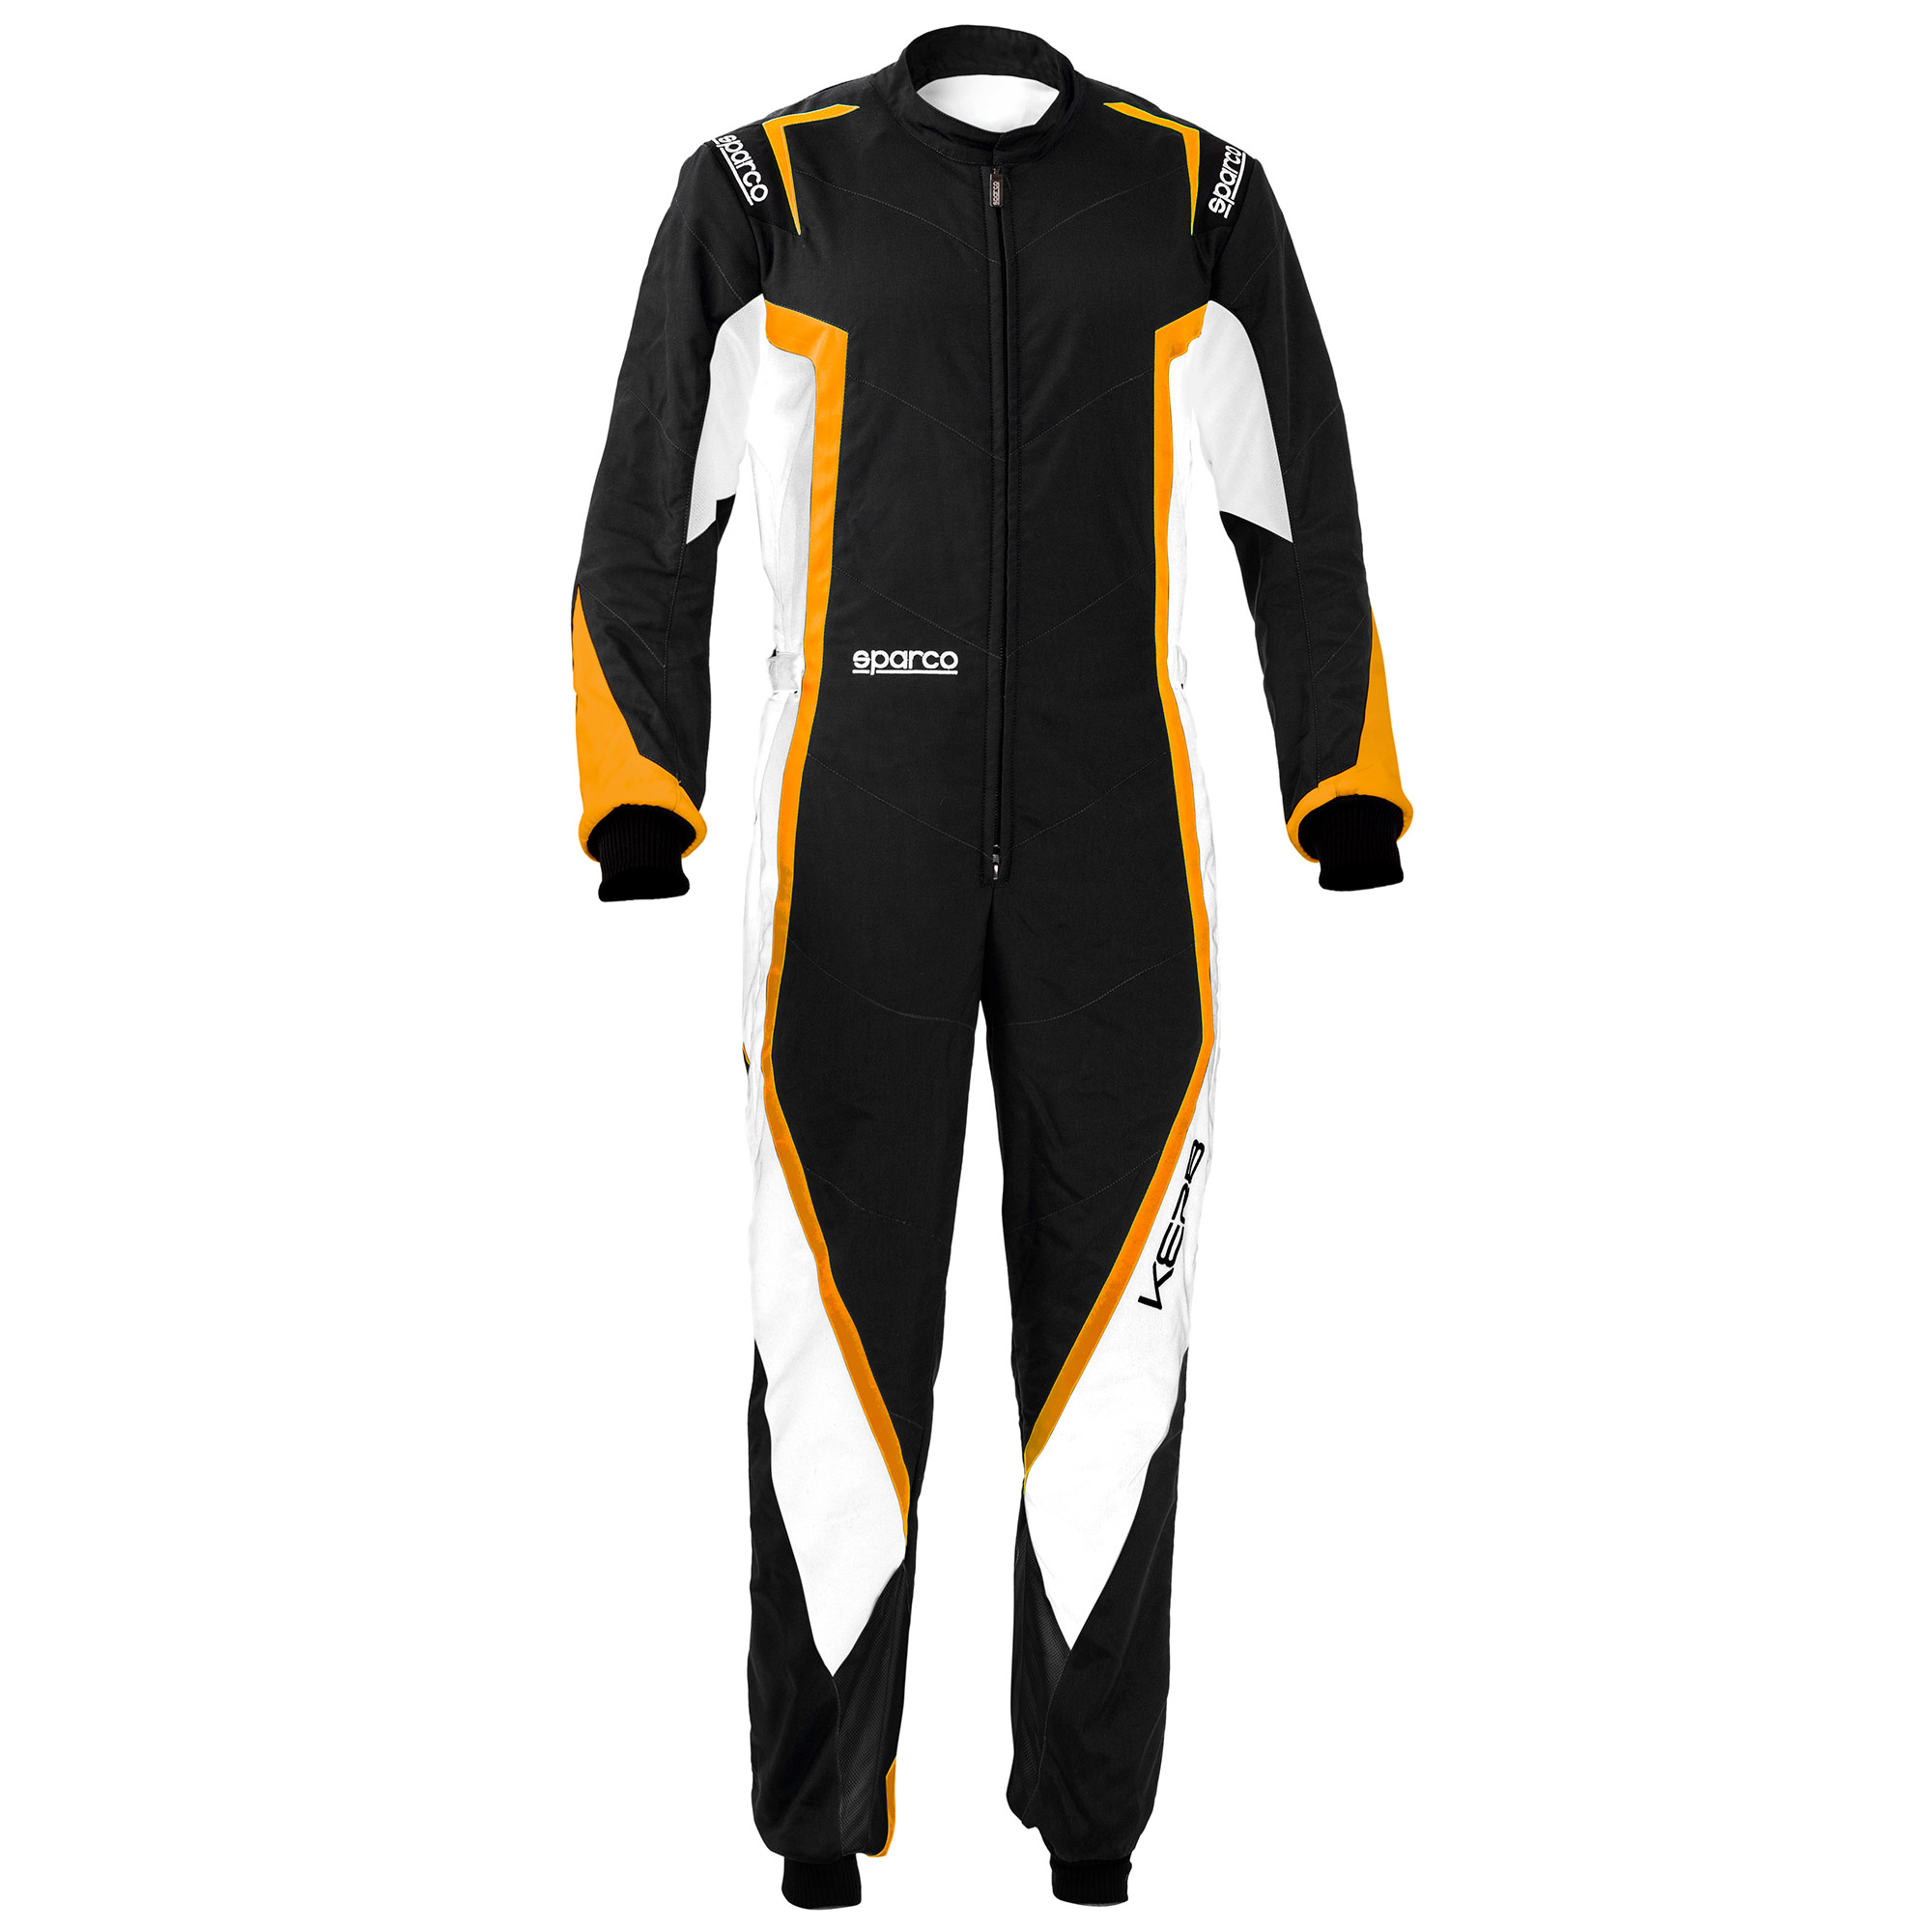 GO Kart Race Suit CIK/FIA Level 2 